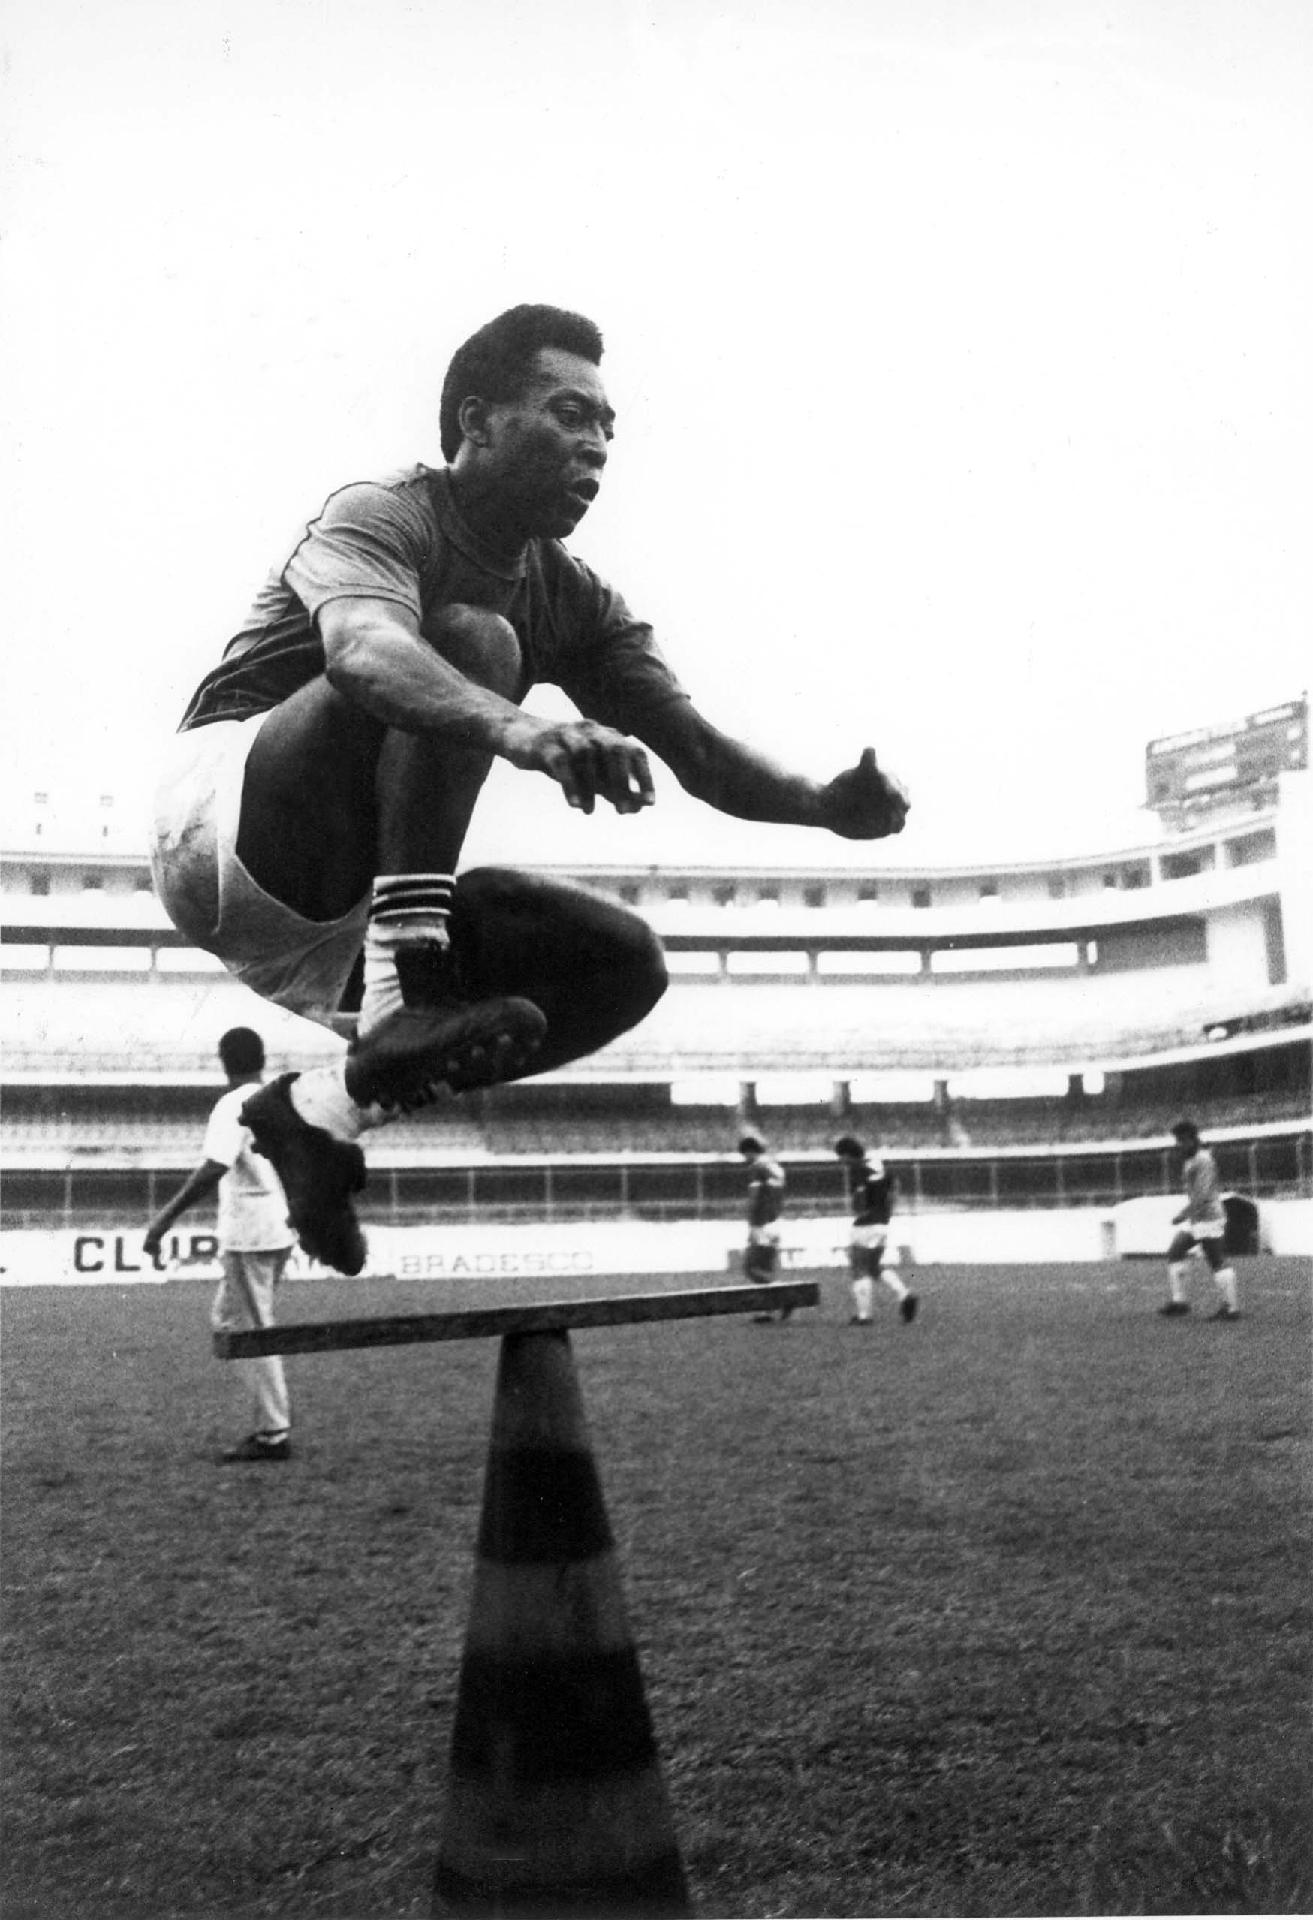 01/01/1970 - Pelé salta sobre cone em treino físico na Vila Belmiro (Santos). O camisa 10 sempre foi um atleta aplicado no condicionamento do corpo. - Alberto Marques/Estadão Conteúdo